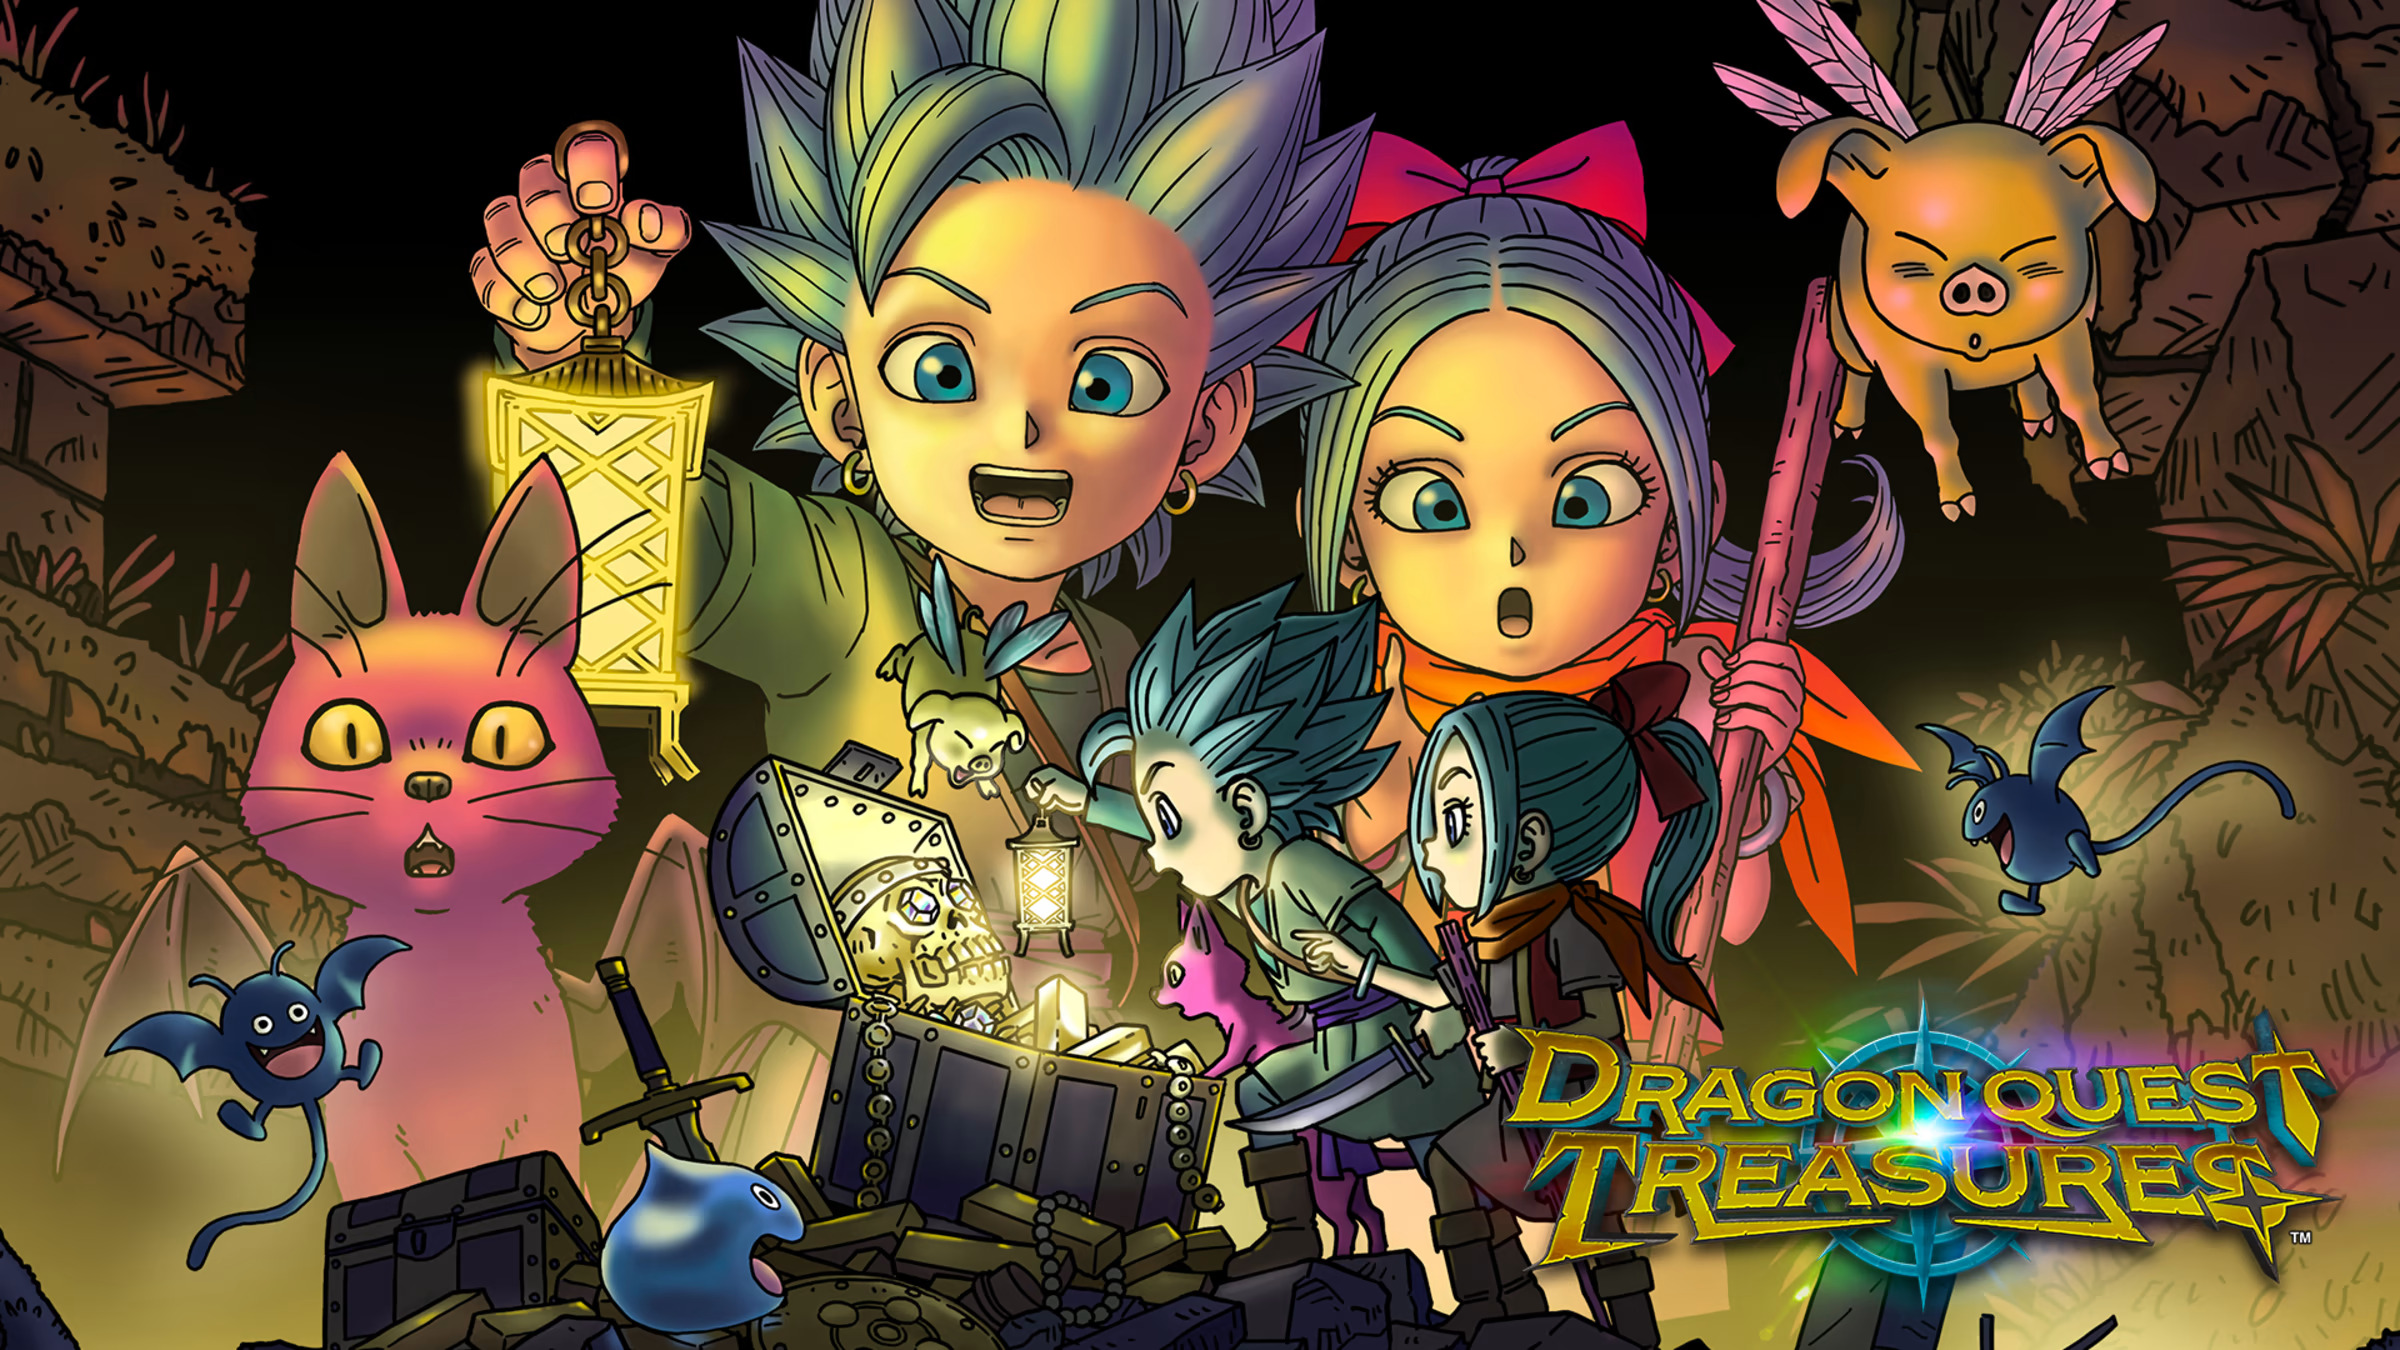 Unerwartet, aber angenehm: Dragon Quest Treasures ist auf Steam erschienen